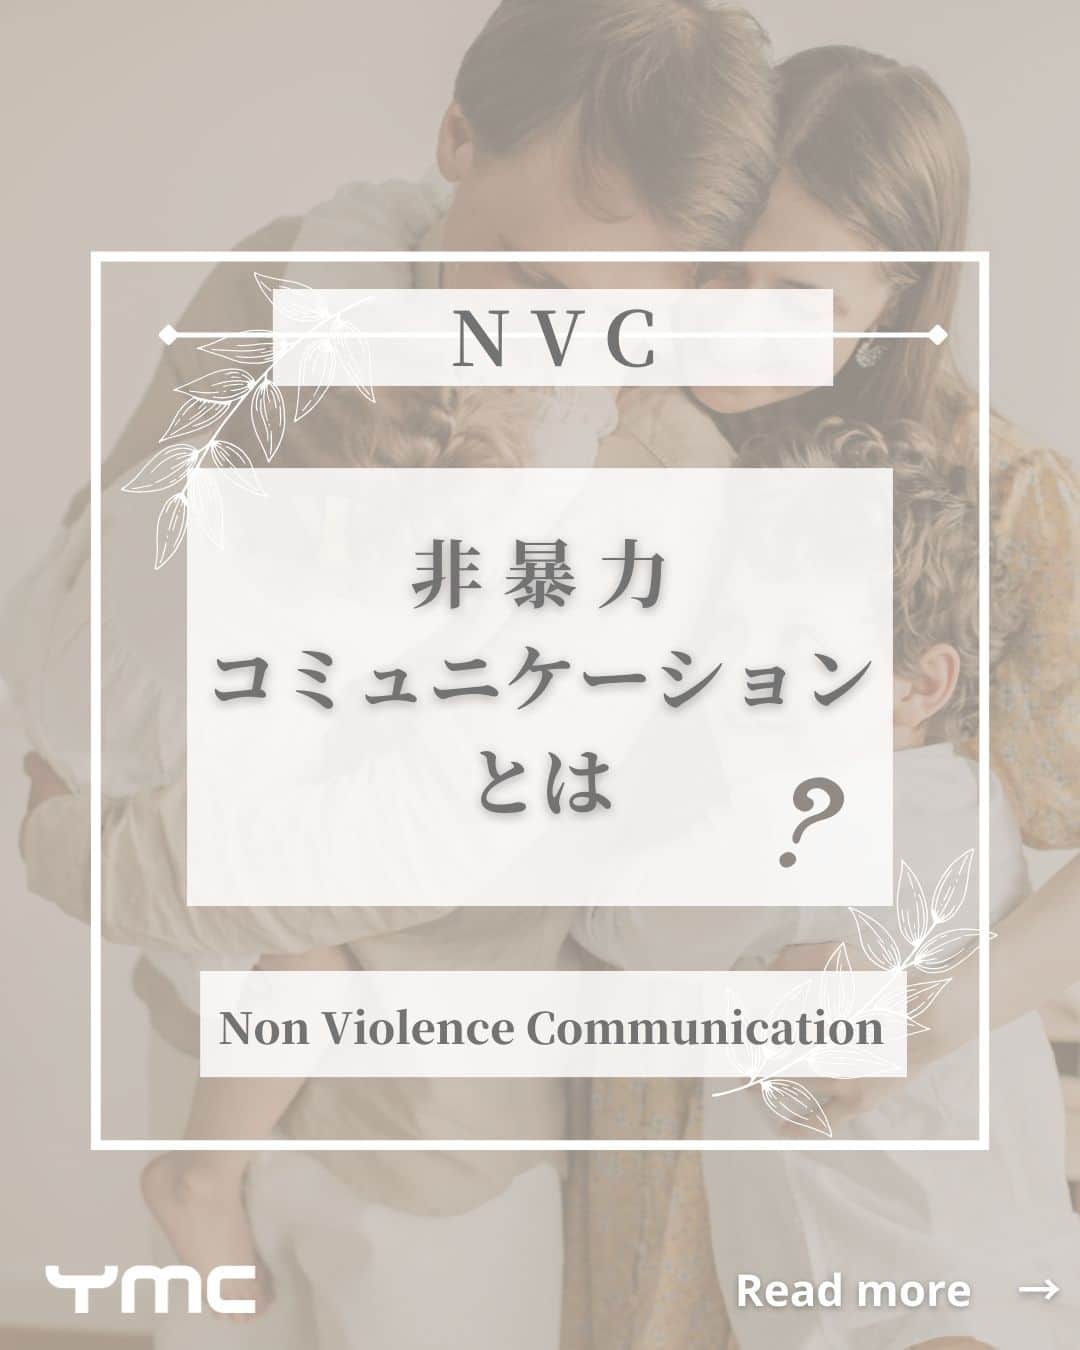 YMCメディカルトレーナーズスクール公式のインスタグラム：「@ymcmedical　👈　他の投稿もチェックこんにちは！  こんにちは！ YMCメディカルトレーナーズスクールです✨  今回は、人と関わるお仕事をされる方に、ぜひ知っていただきたい非暴力コミュニケーション（NVC）についてご紹介します。 自分の内と外に平和をつくるコミュニケーションスキルのお話です😊💕  ぜひ最後まで読んでみてくださいね～！  ：：：：：：：：：：：：：：：：：：：：：：  YMCメディカルトレーナーズスクール @ymcmedical　◀️　🙌  ヨガ・健康に関する役立つ情報を発信中📶  ：：：：：：：：：：：：：：：：：：：：：：  #ymcメディカルトレーナーズスクール　 #YMCヨガスタジオ　 #RYT２００　 #ヨガ資格　 #ヨガインストラクター #ヨガ初心者 #NVC #非暴力」